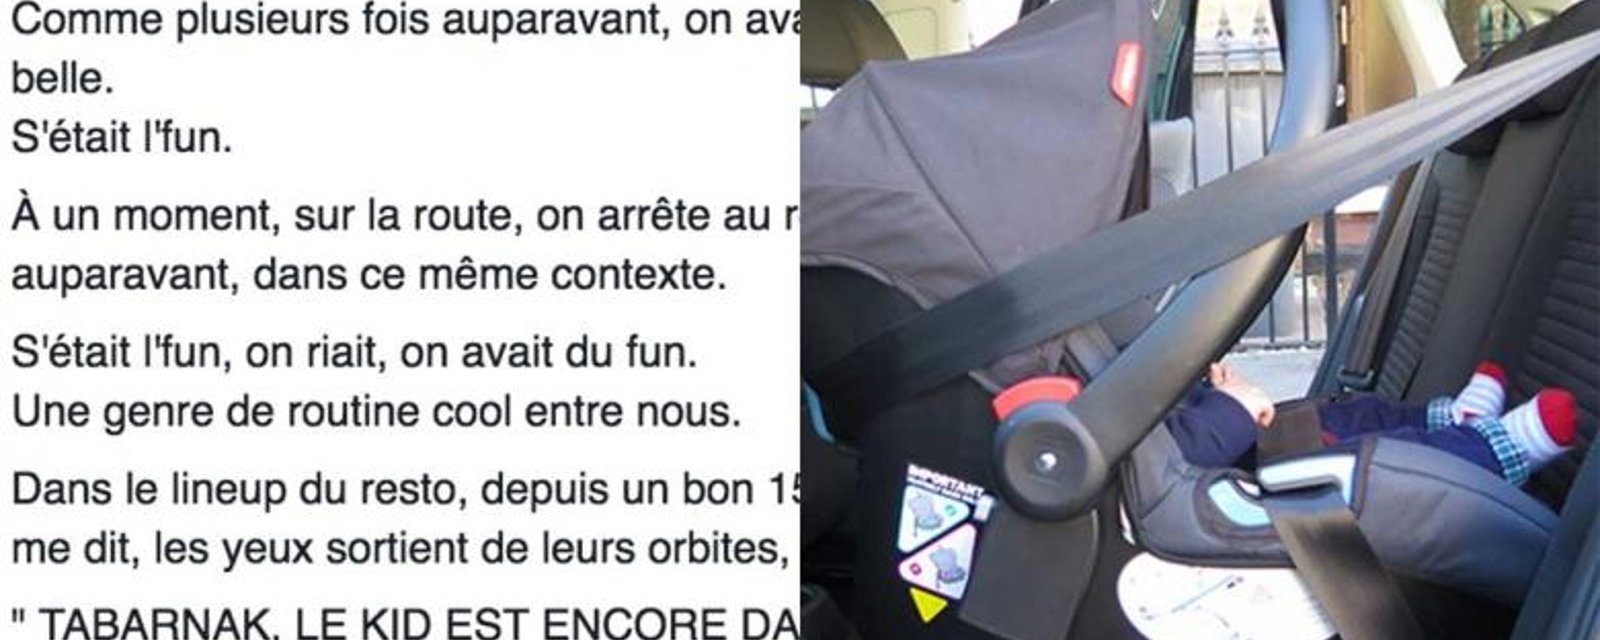 Le témoignage d'un Québécois qui a oublié un enfant dans la voiture devient viral!